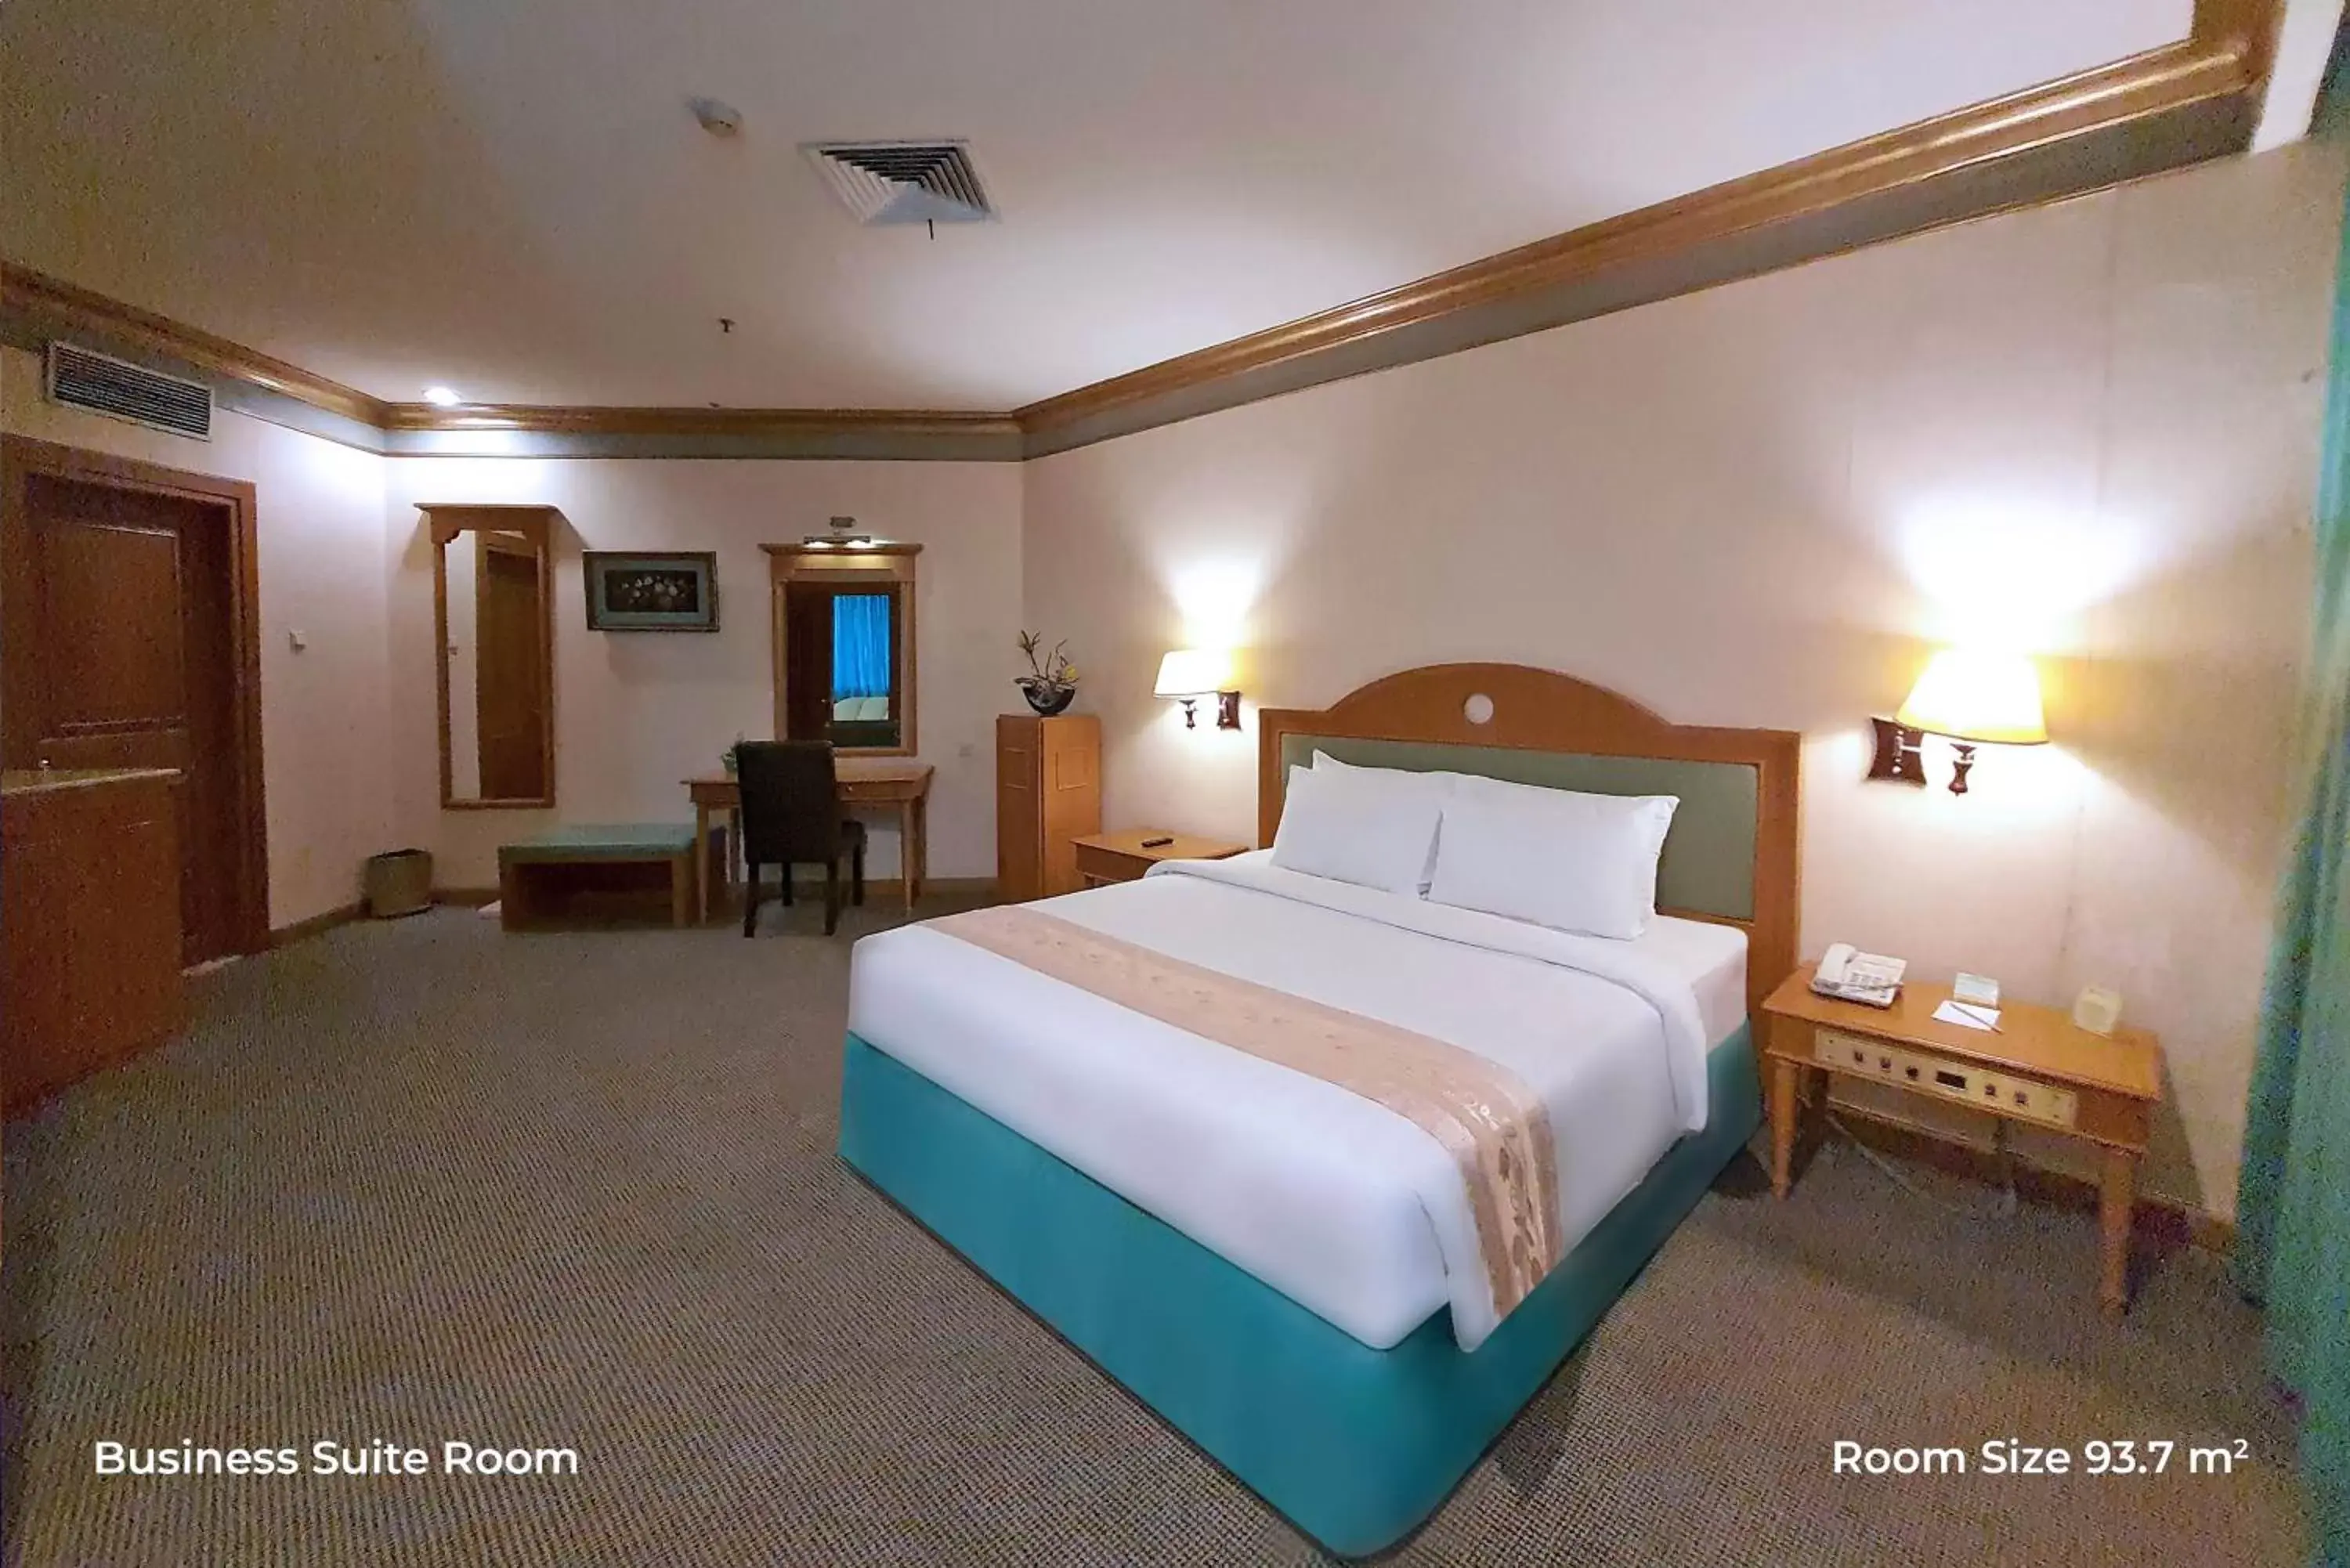 Bedroom, Bed in Tunjungan Hotel